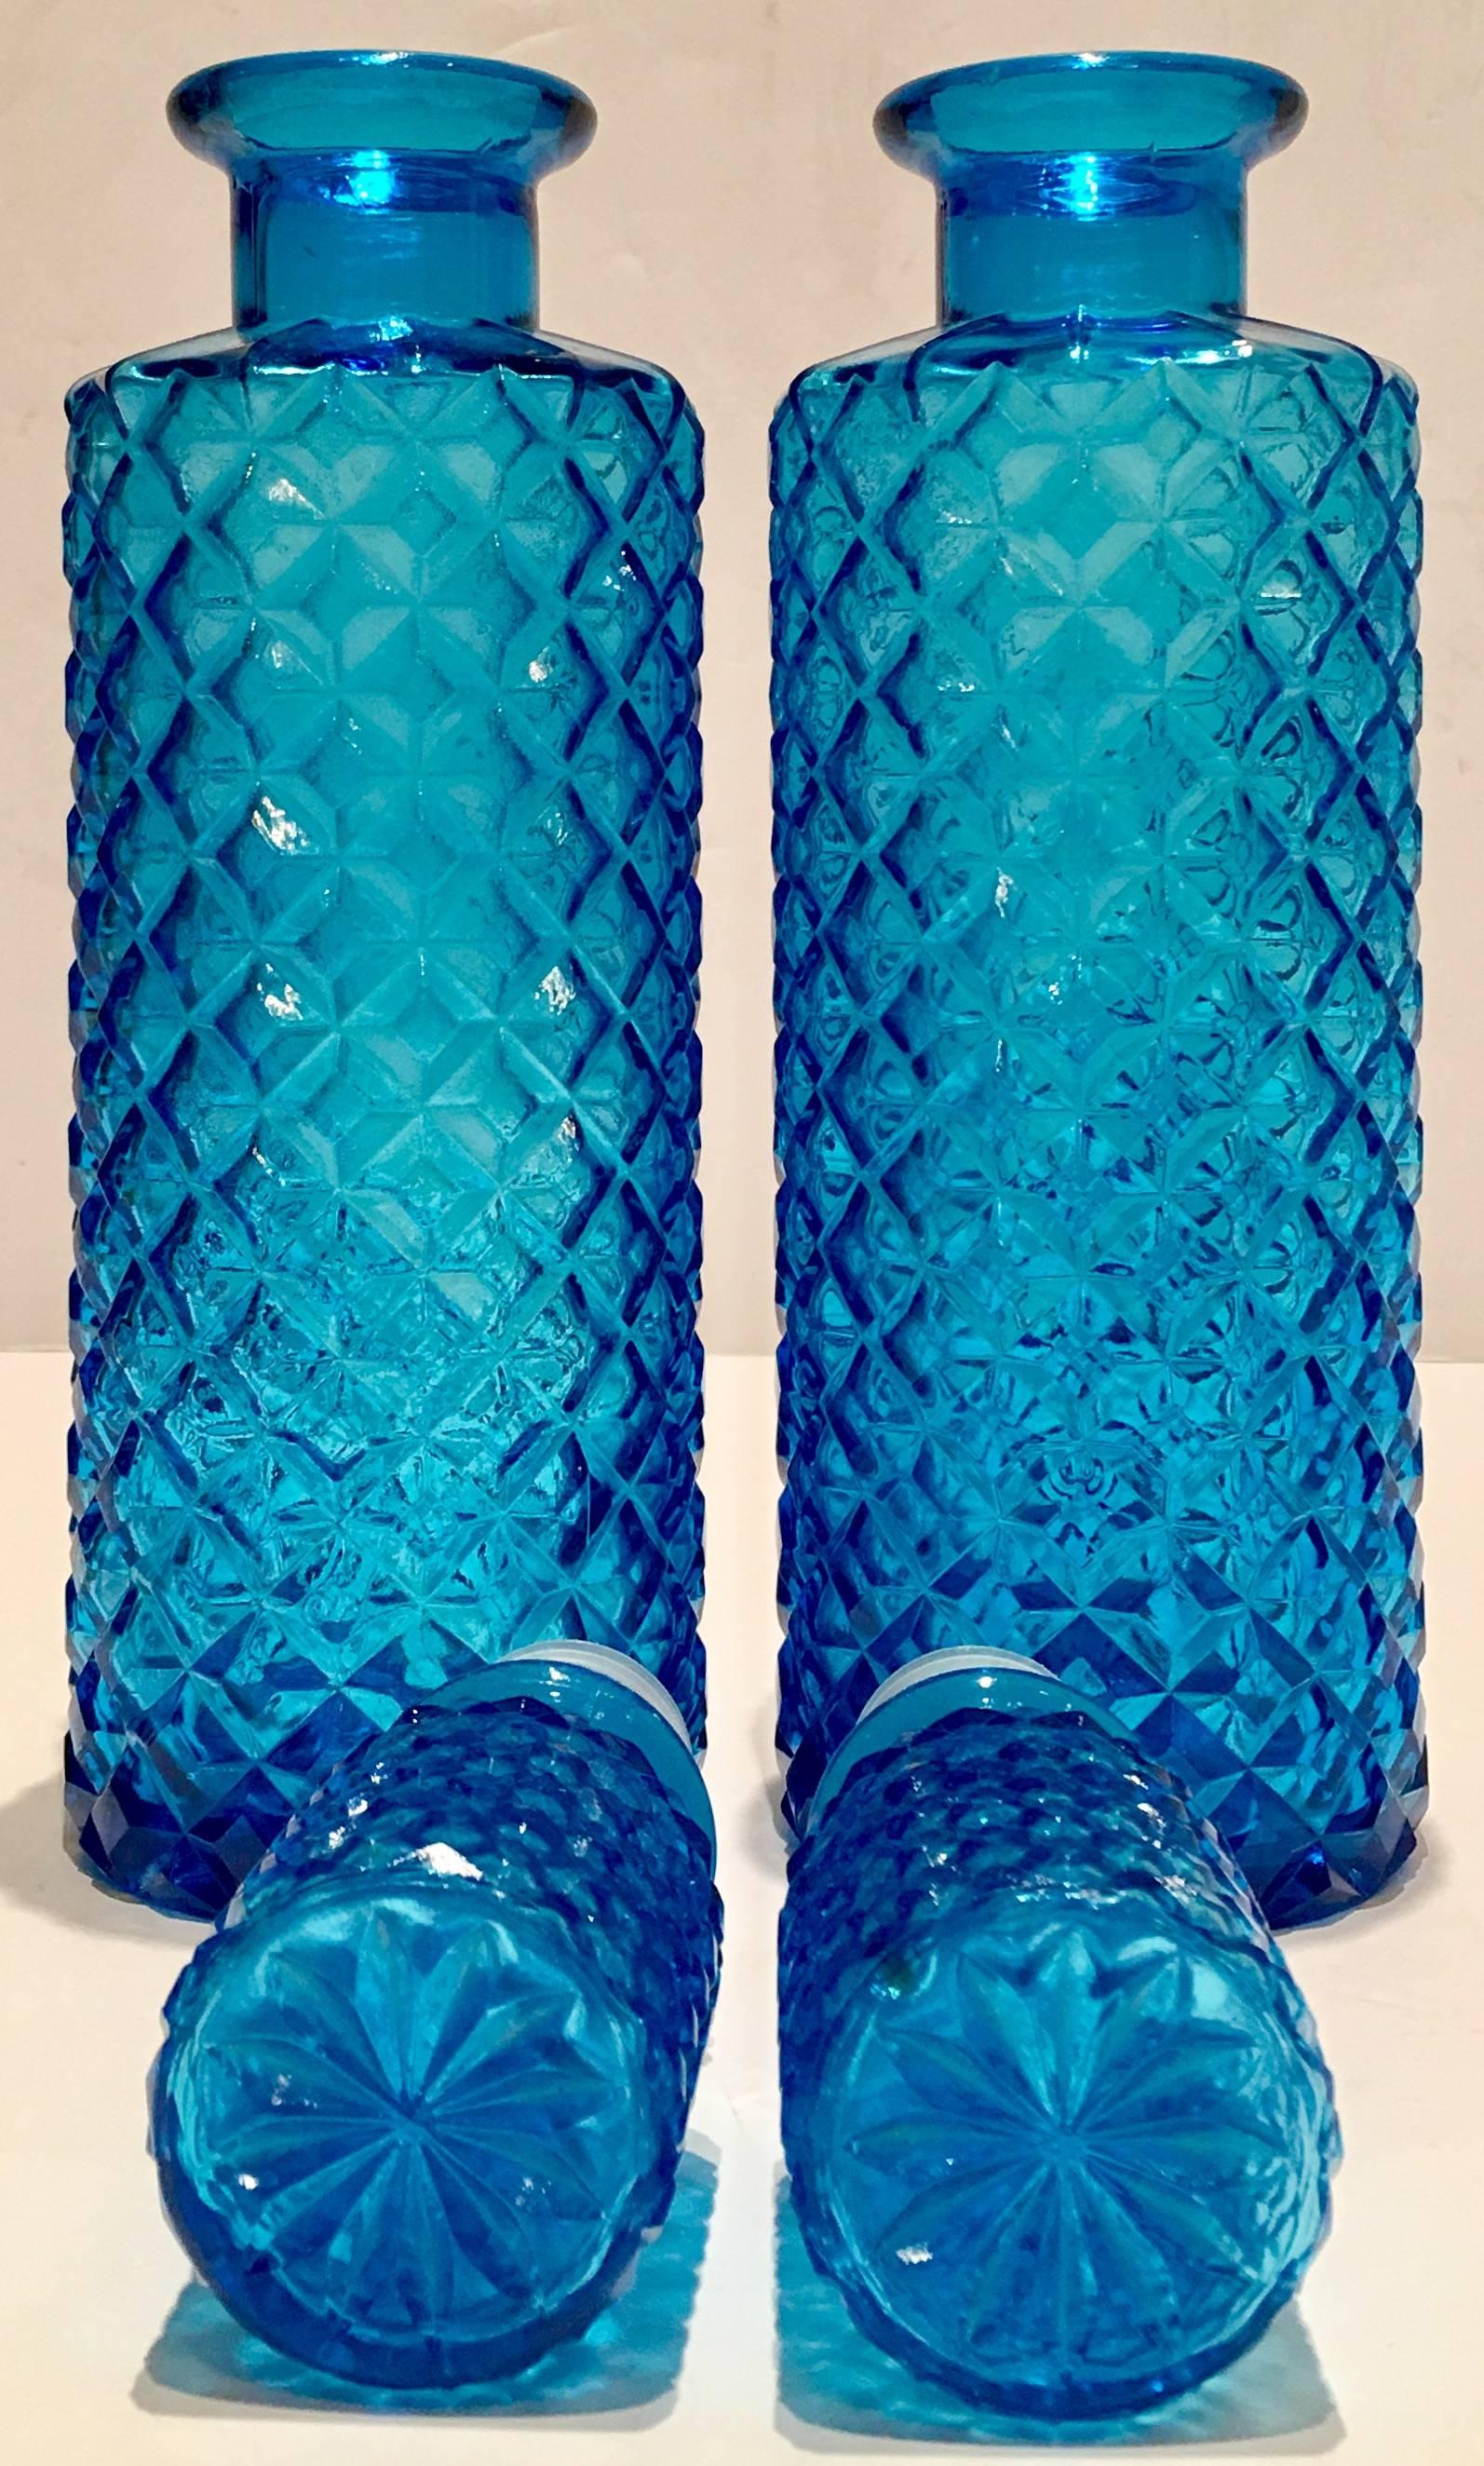 vintage blue glass decanter